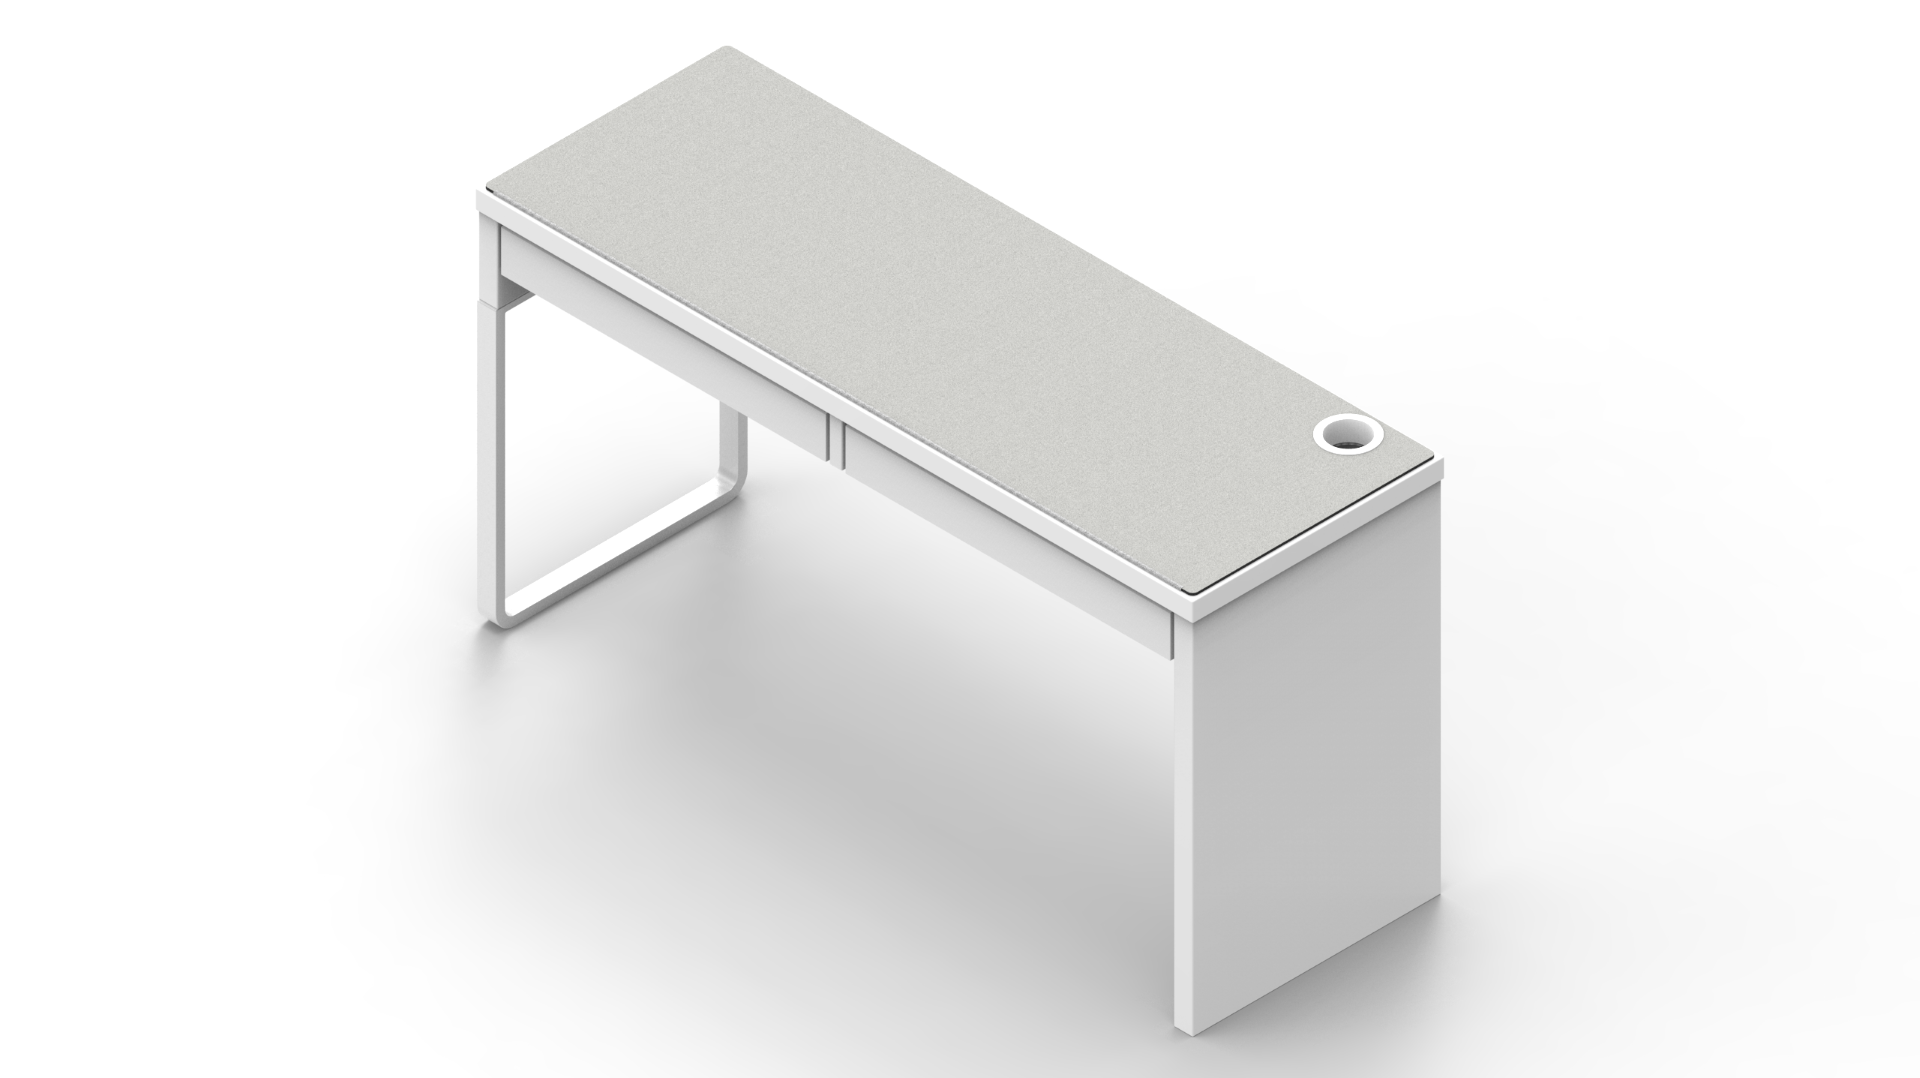 White IKEA MICKE Desk Mat (56" / 142 cm) Full-desk Mouse Pad MK7S78HG3C |40176|